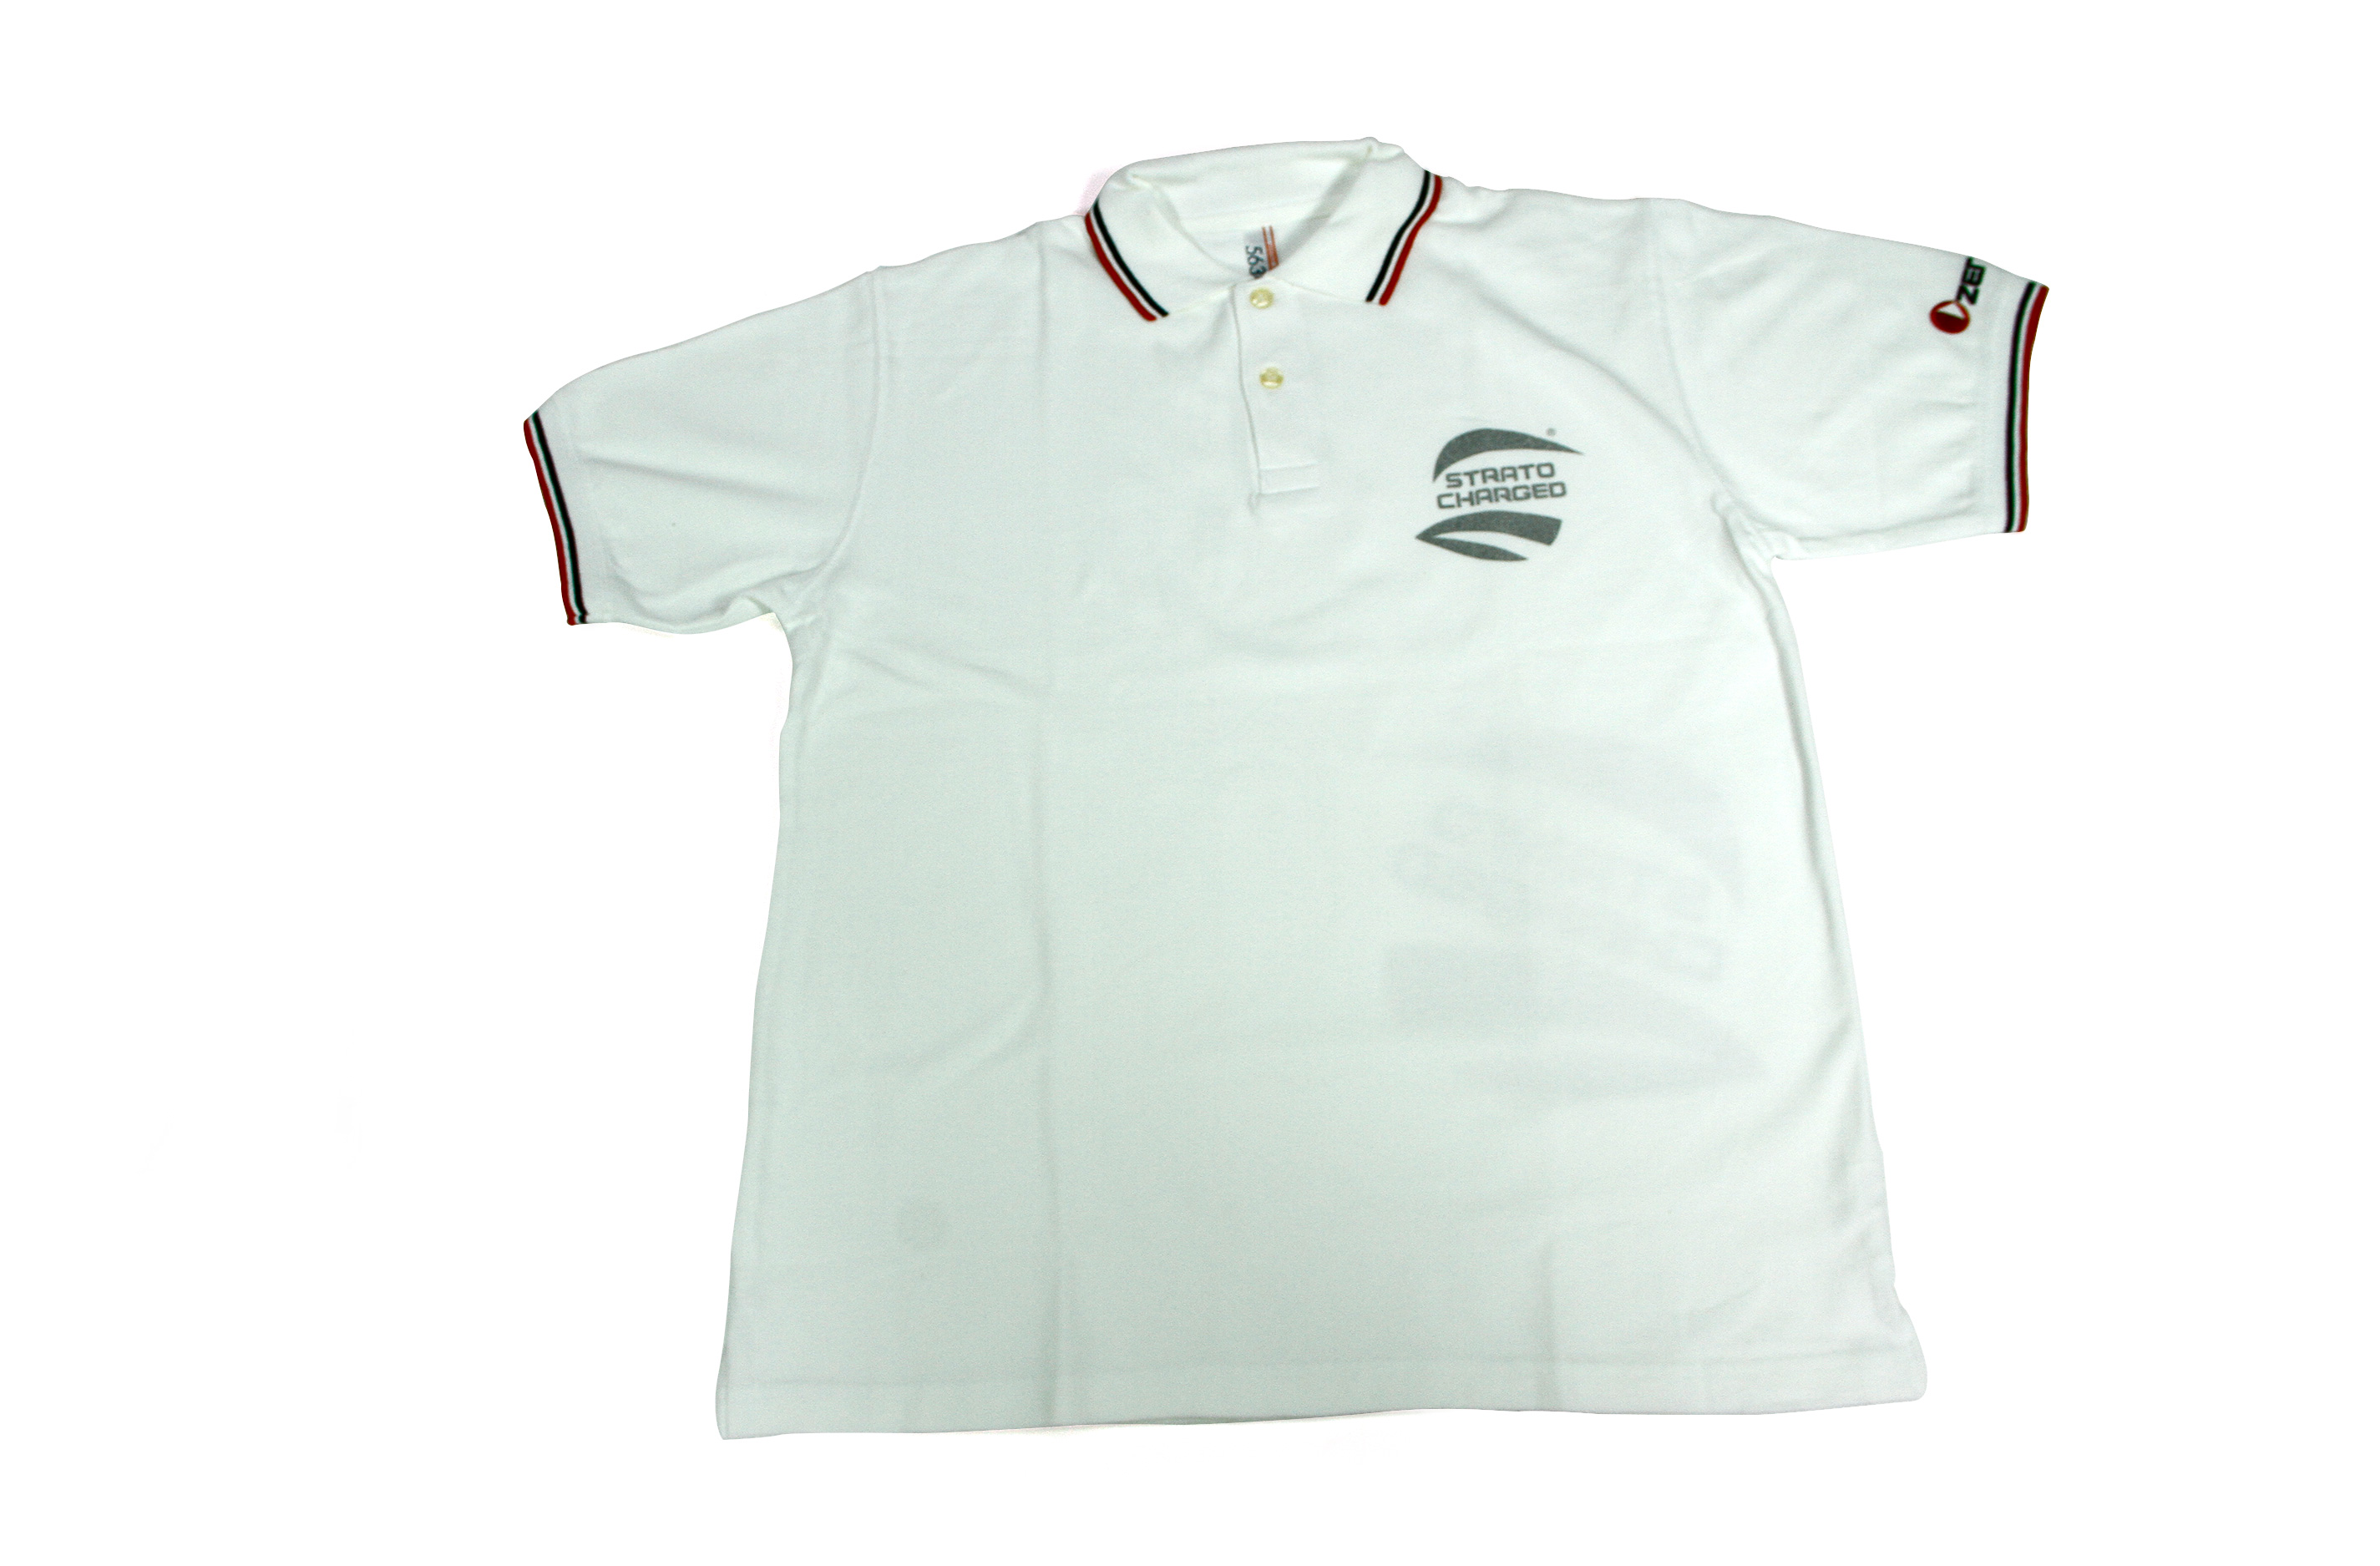 y1392/02 Zenoah Shirt white, size L